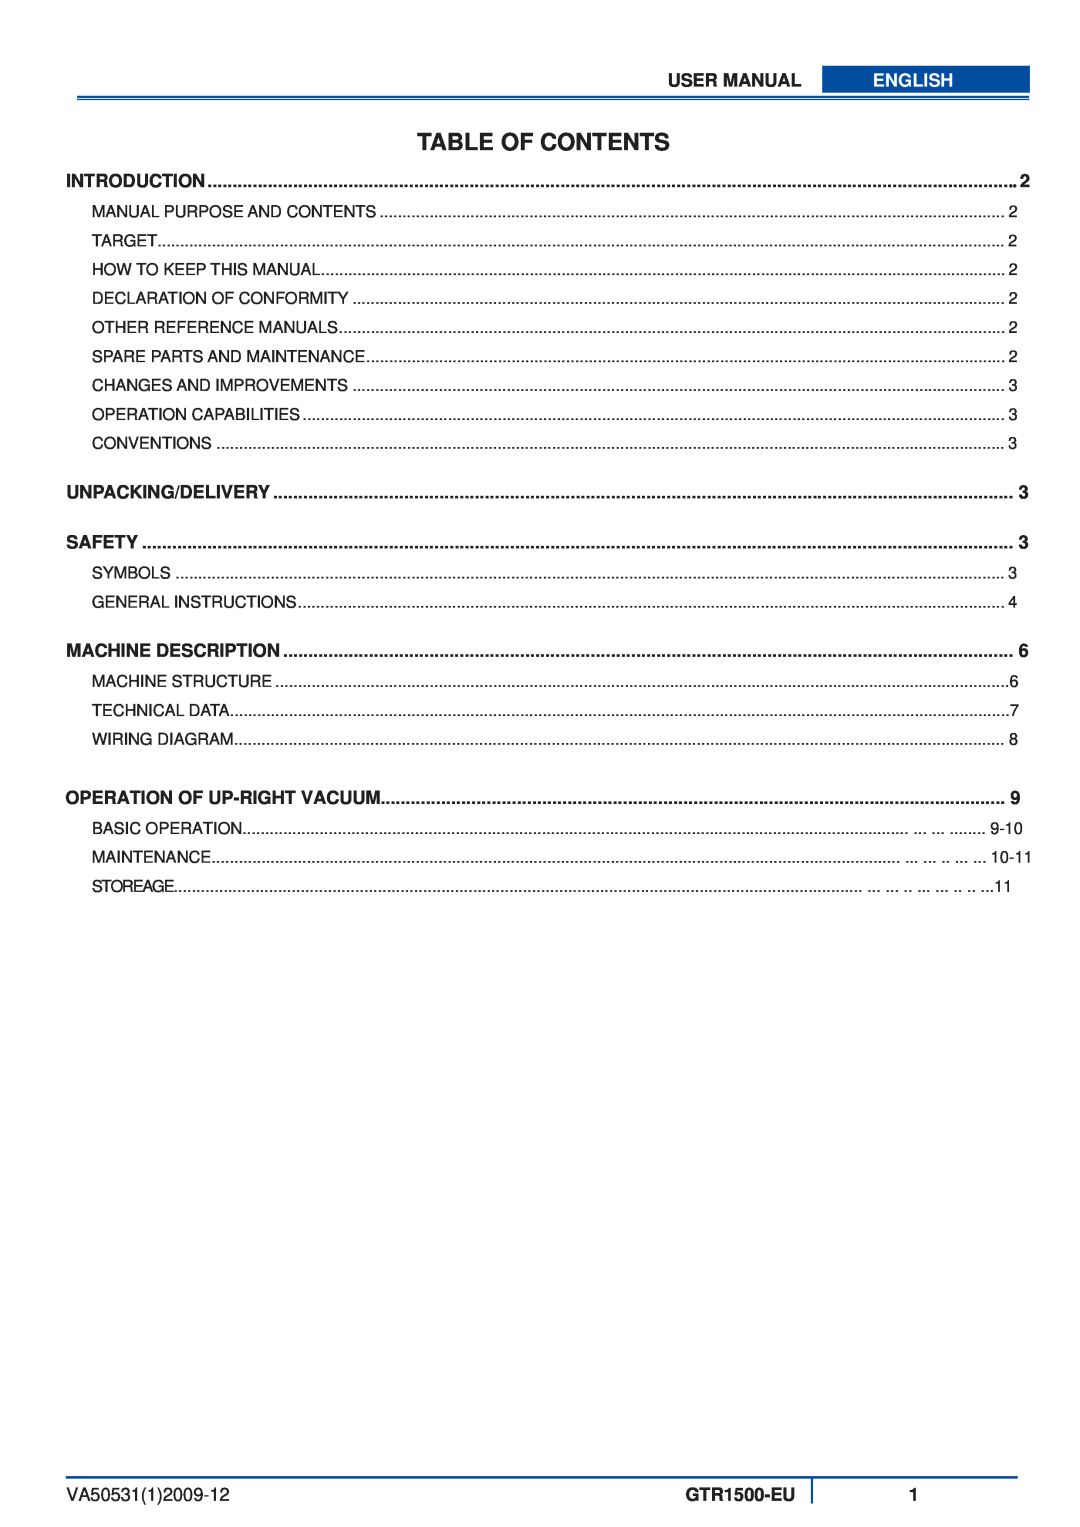 Viper GTR1500-EU user manual Table Of Contents, English, VA5053112009-12 